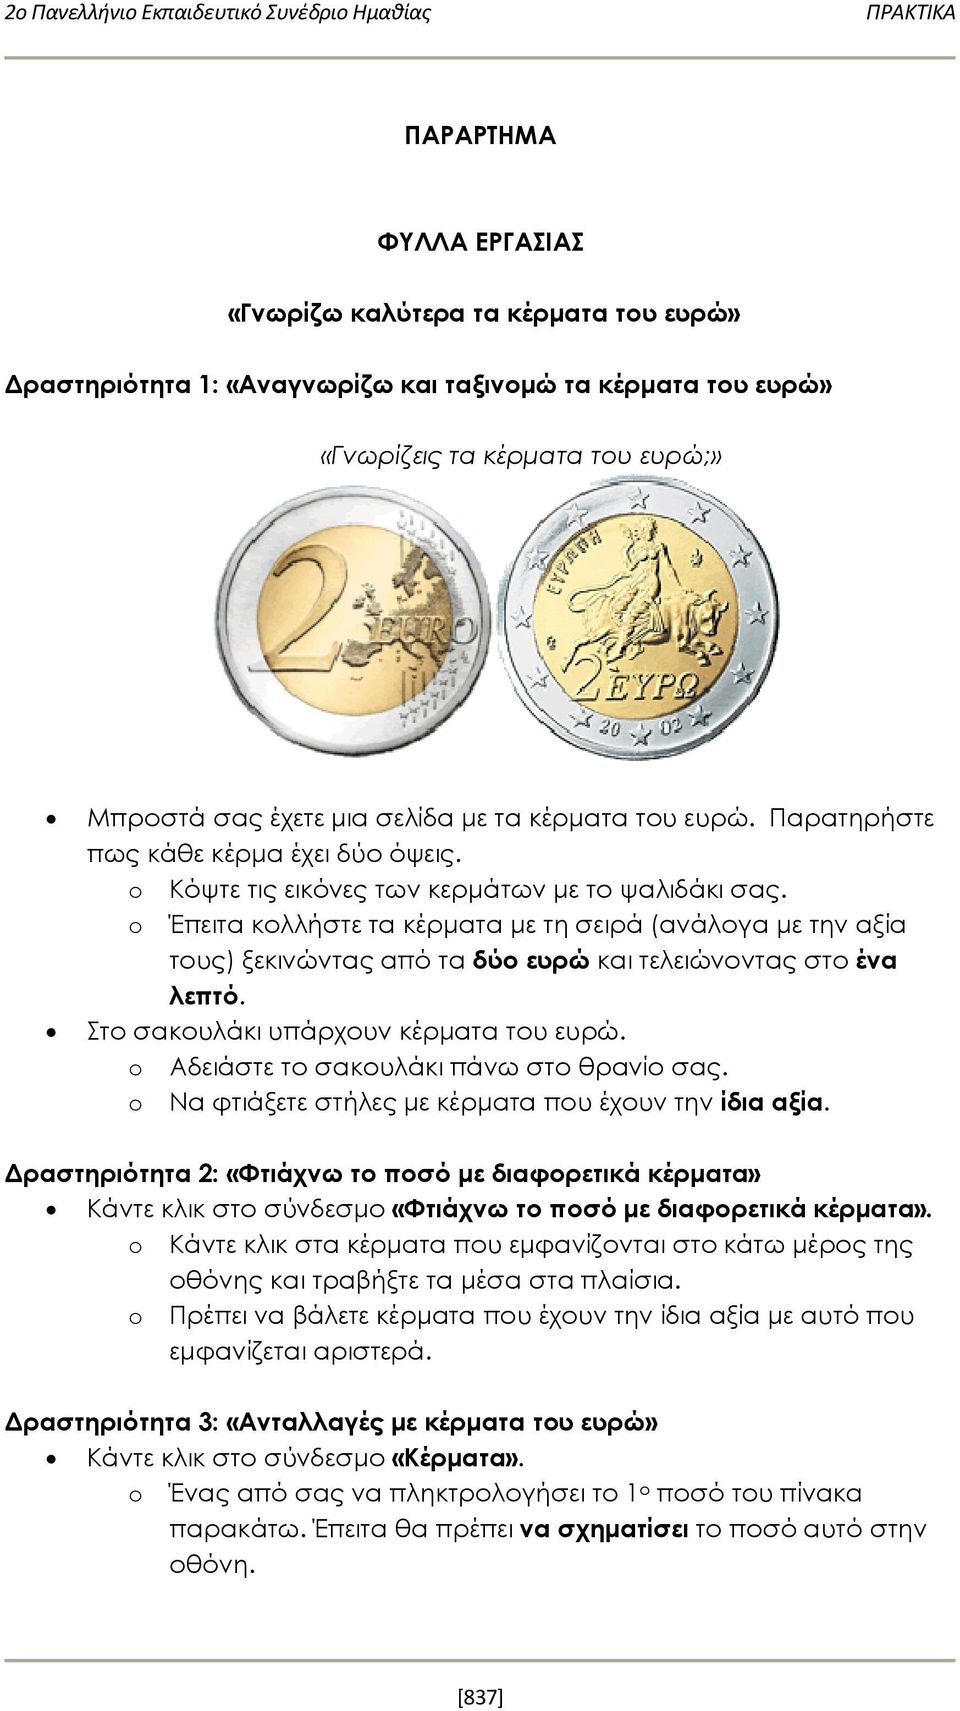 o Έπειτα κολλήστε τα κέρματα με τη σειρά (ανάλογα με την αξία τους) ξεκινώντας από τα δύο ευρώ και τελειώνοντας στο ένα λεπτό. Στο σακουλάκι υπάρχουν κέρματα του ευρώ.